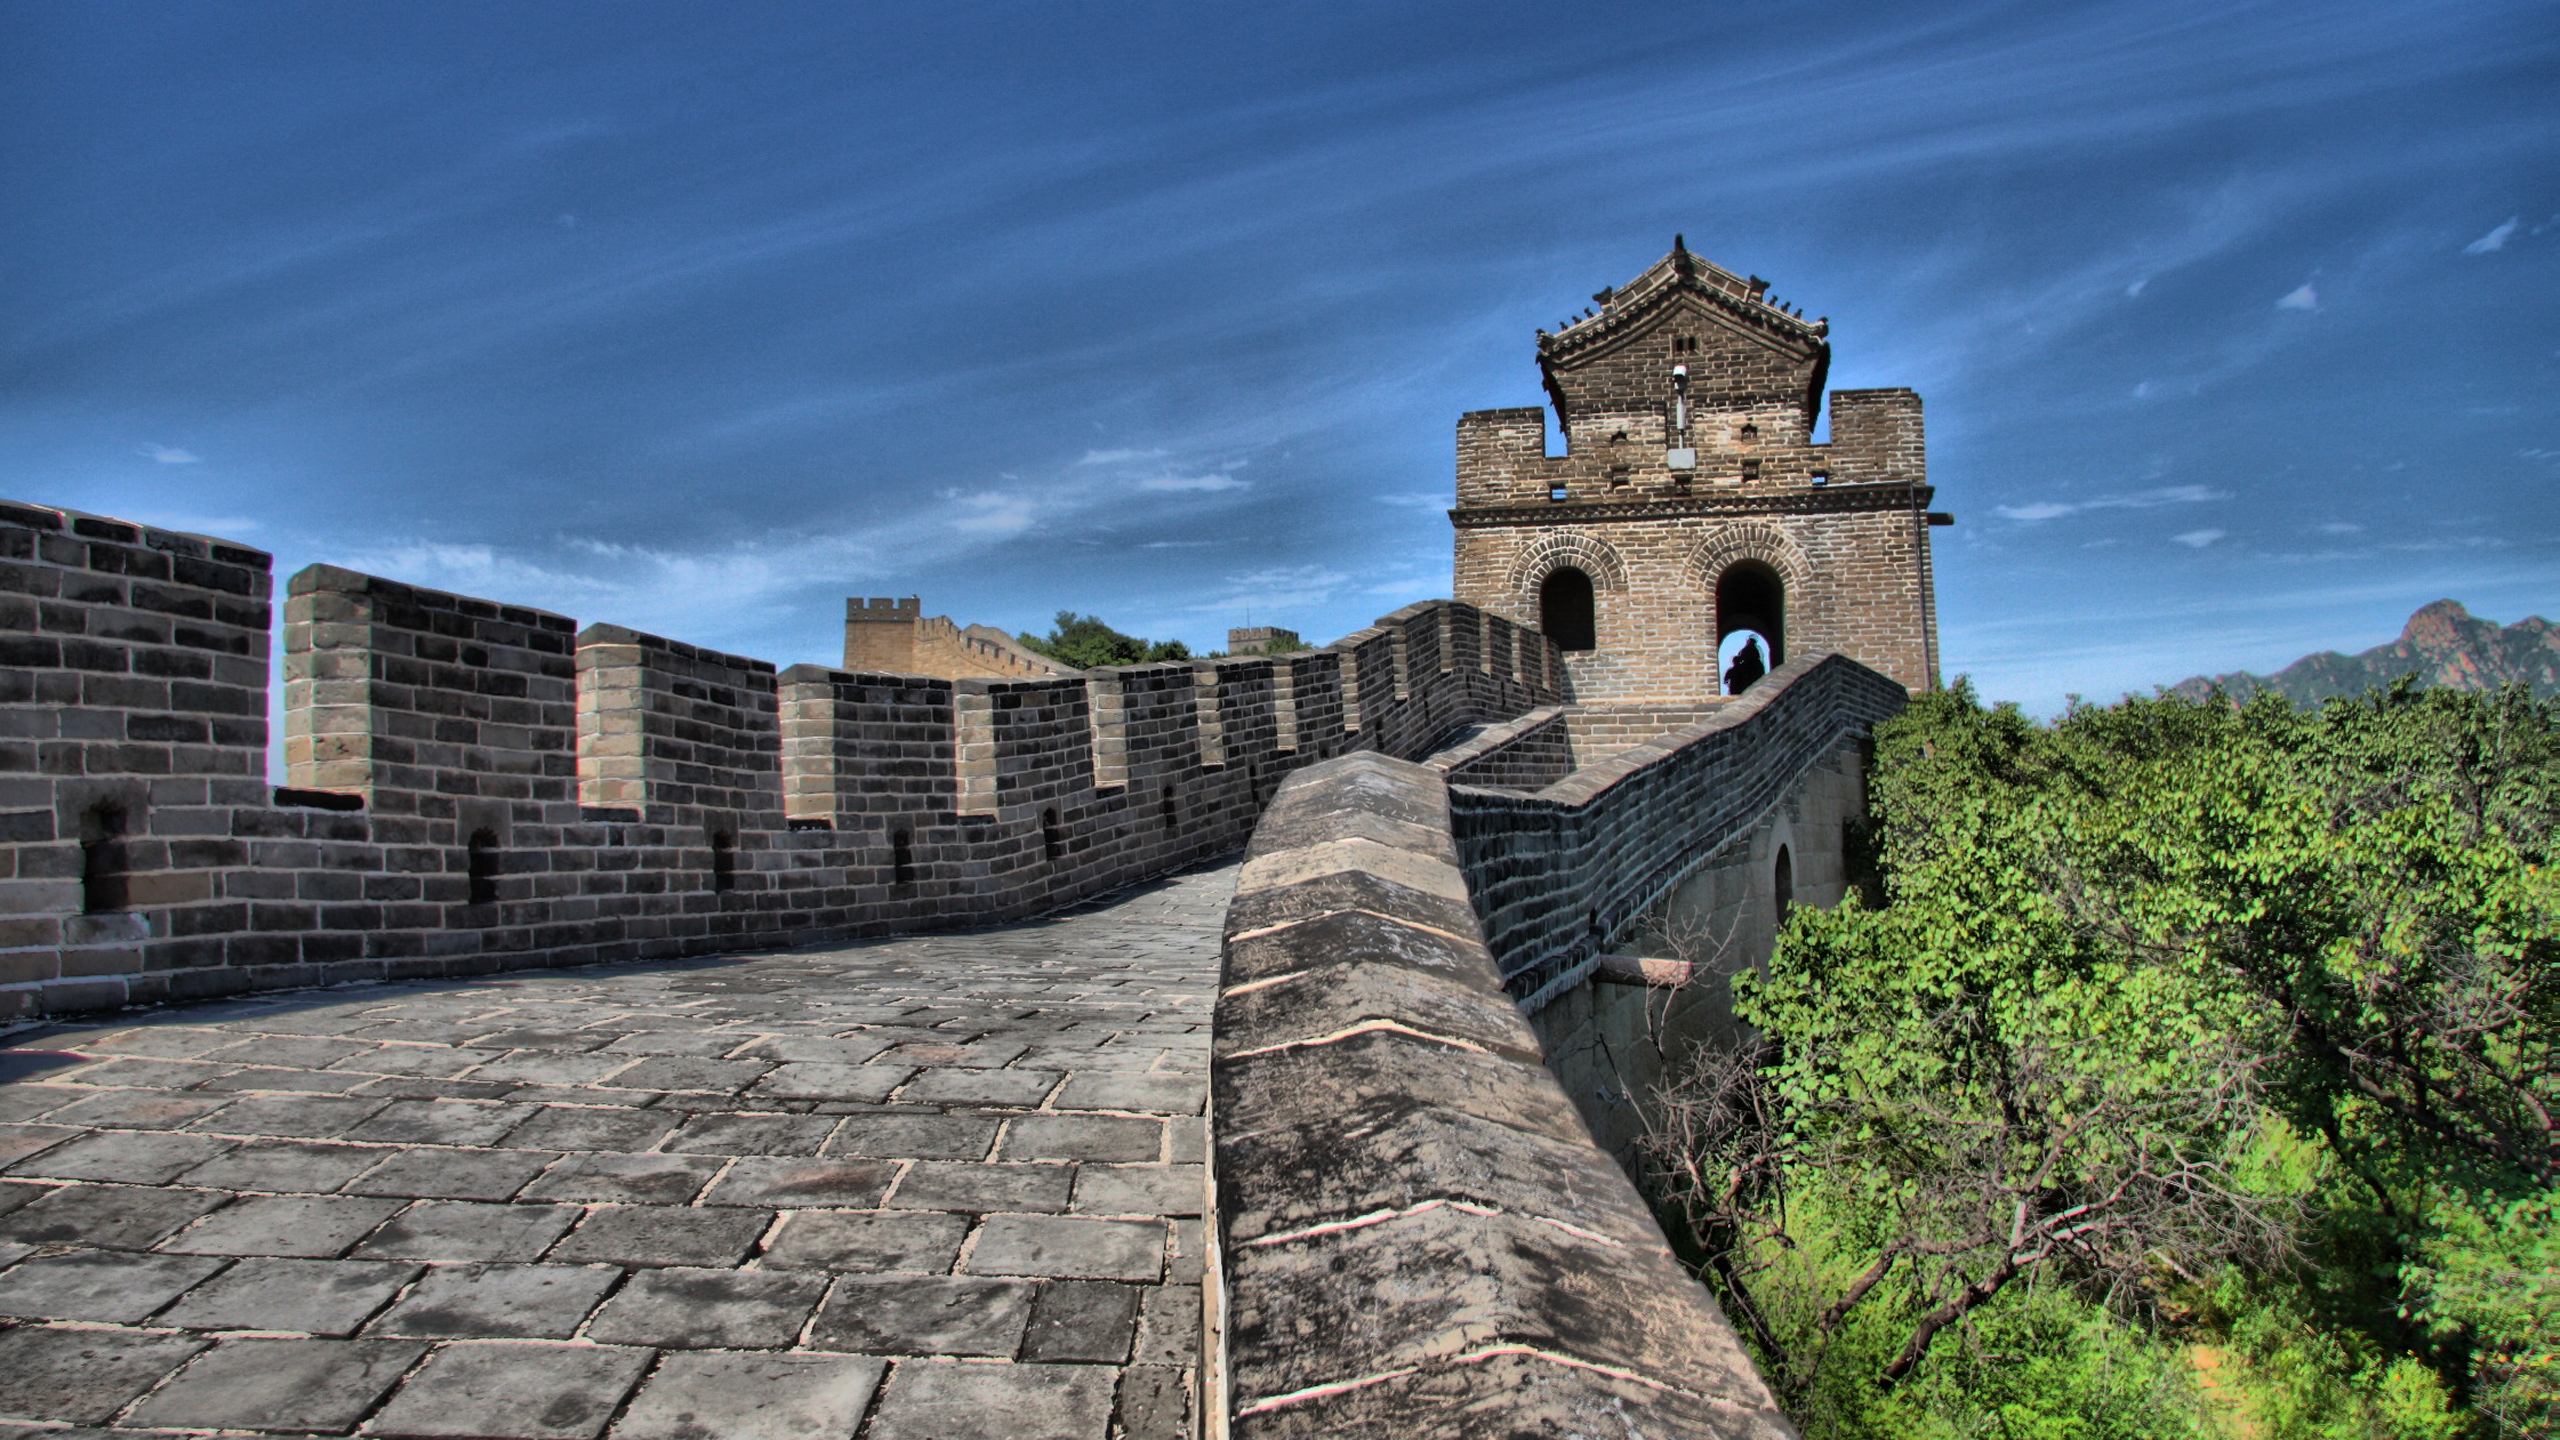 Man Made Great Wall Of China 2560x1440